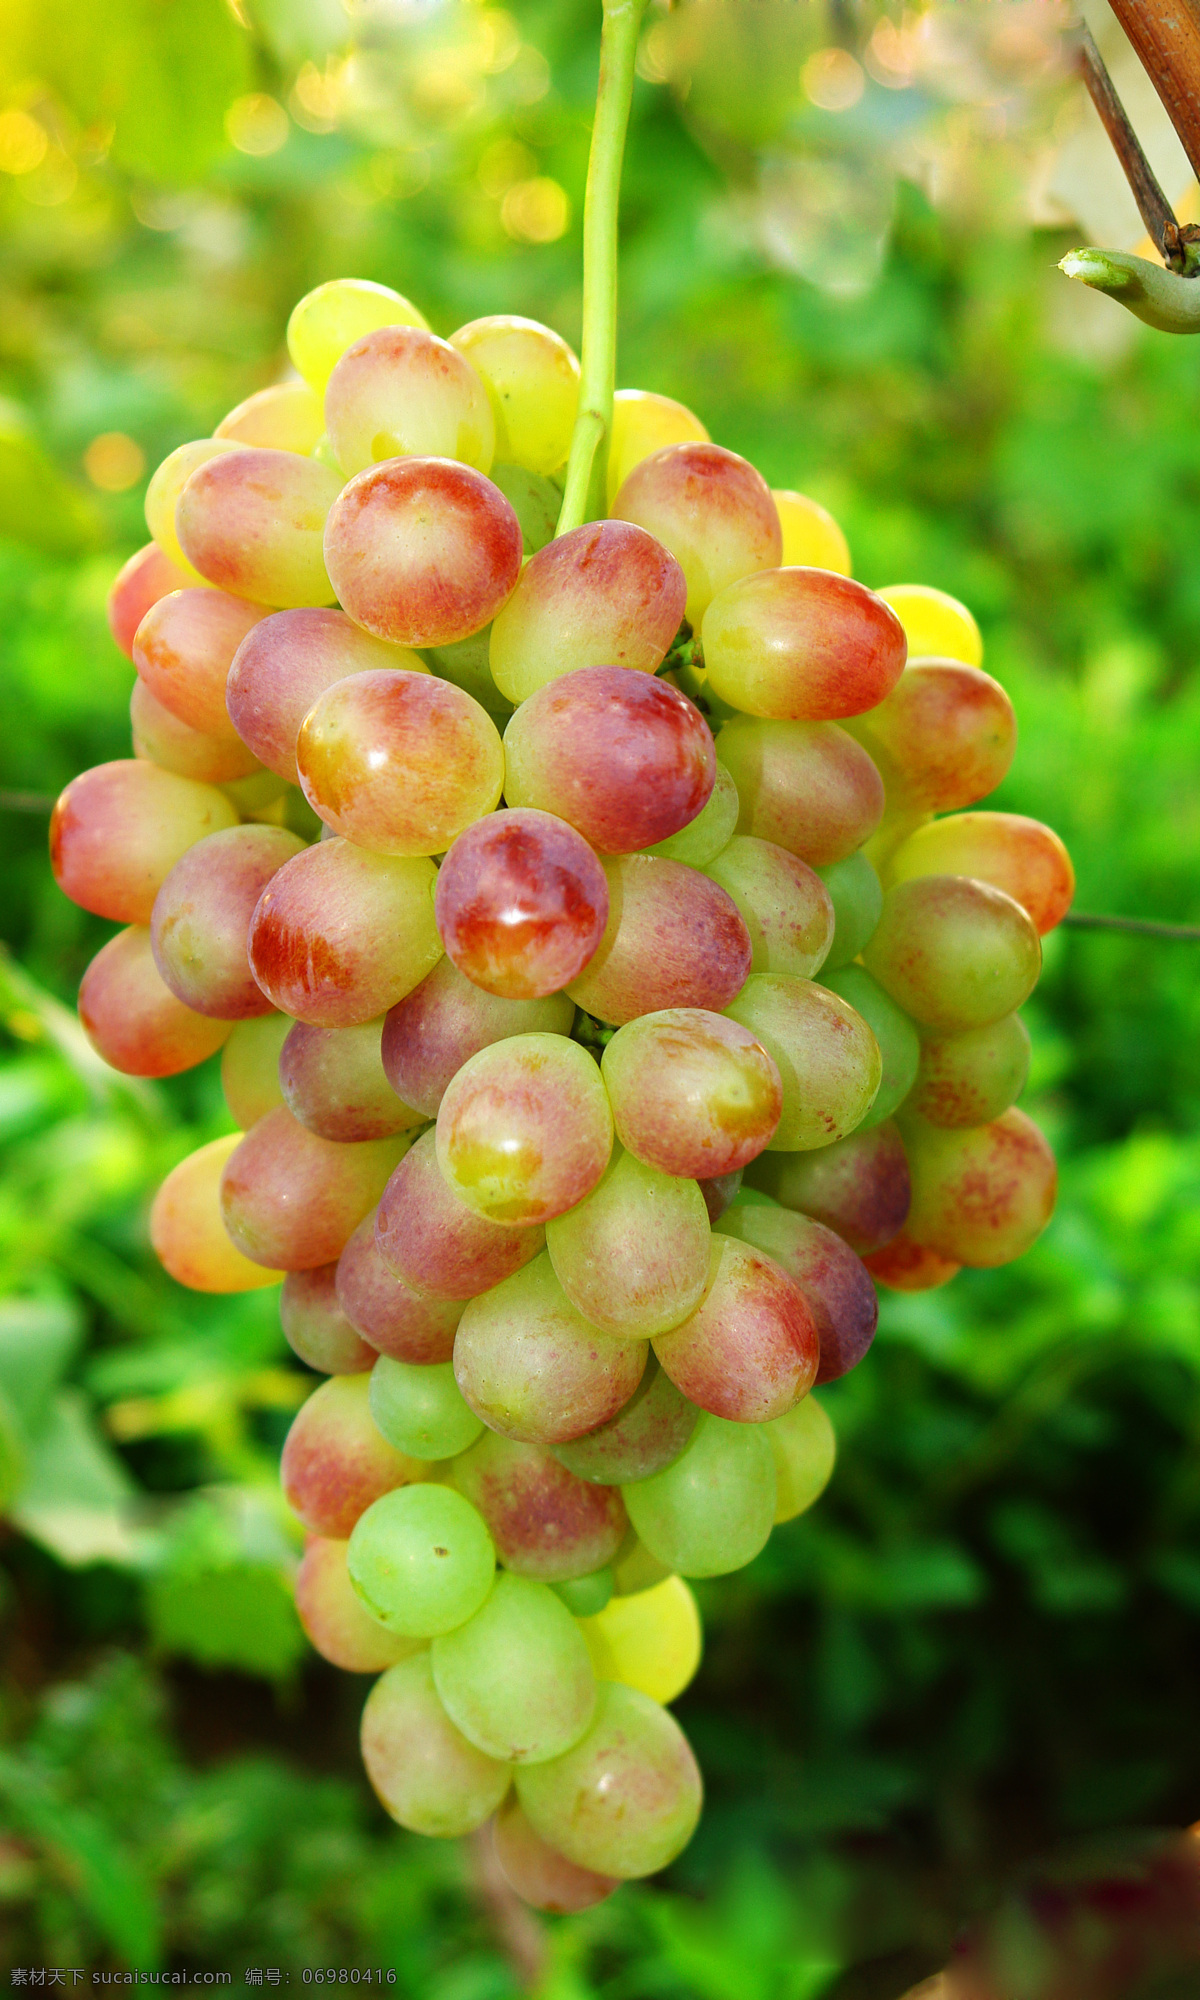 大 红枣 葡萄 林业 农业 生物世界 水果 大红枣葡萄 鲜食 矢量图 日常生活